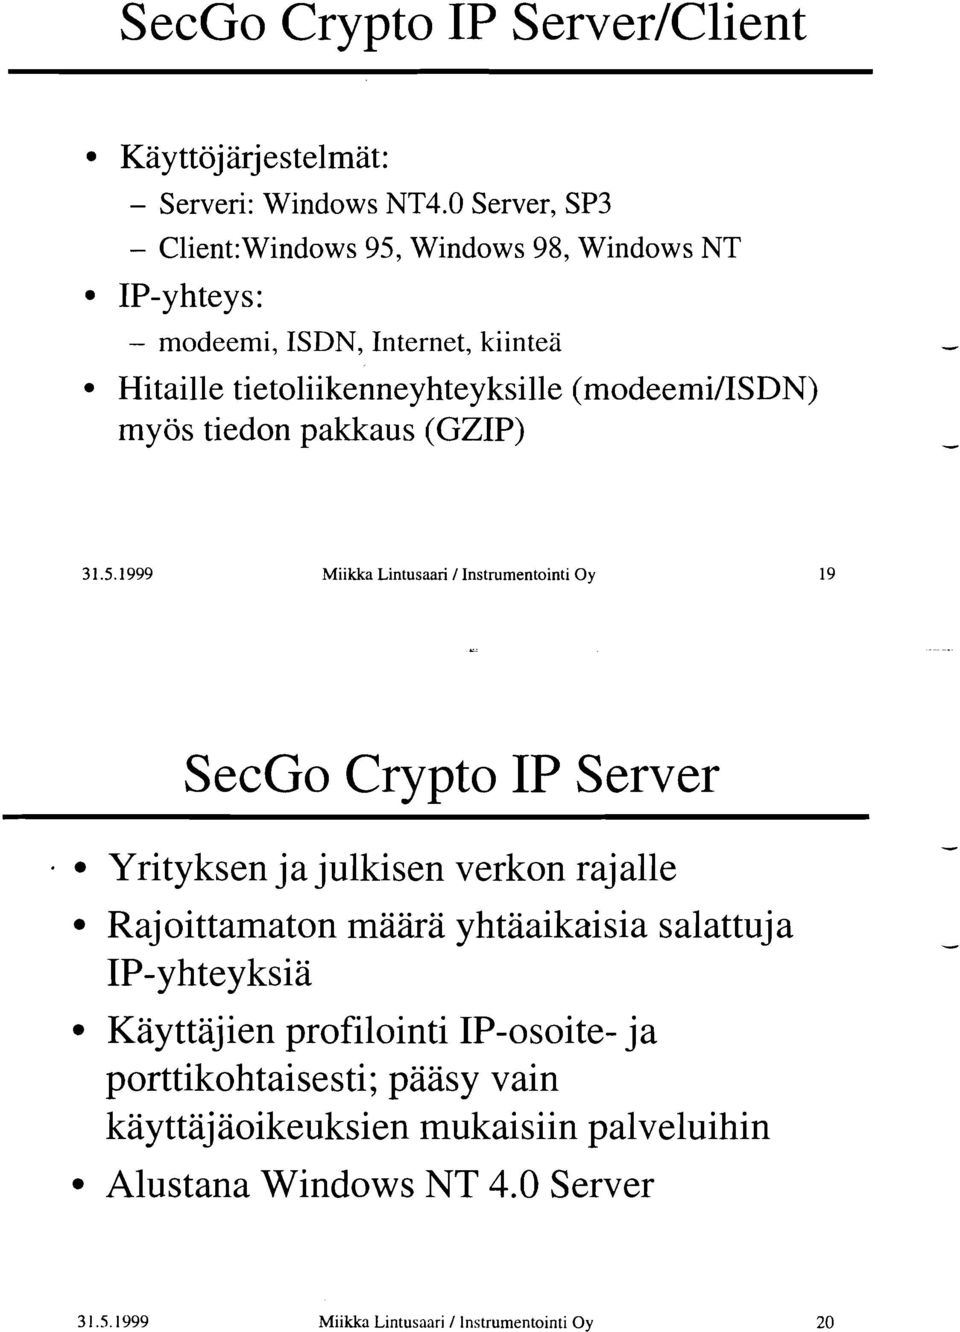 (modeemiiisdn) myös tiedon pakkaus (GZIP) Miikka Lintusaari / Instrumentointi Oy c SecGo Crypto IP Server Yrityksen ja julkisen verkon rajalle